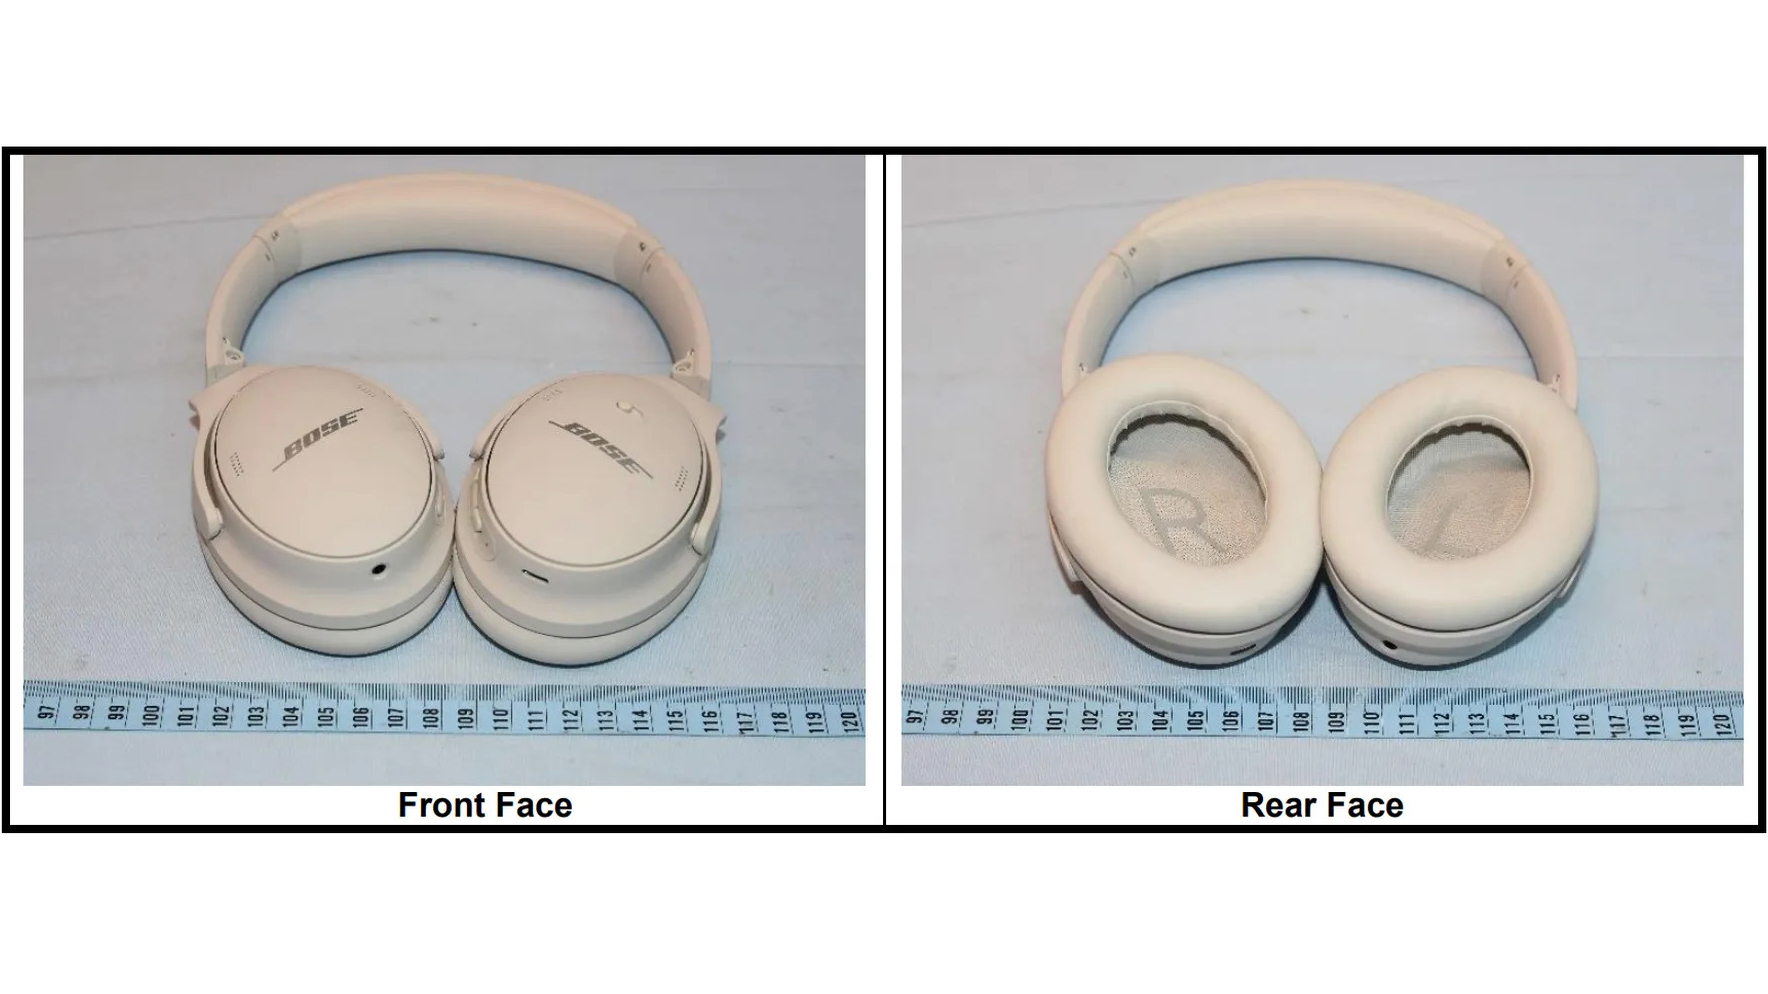 Bose QuietComfort 45 headphones revealed in FCC filing Bose